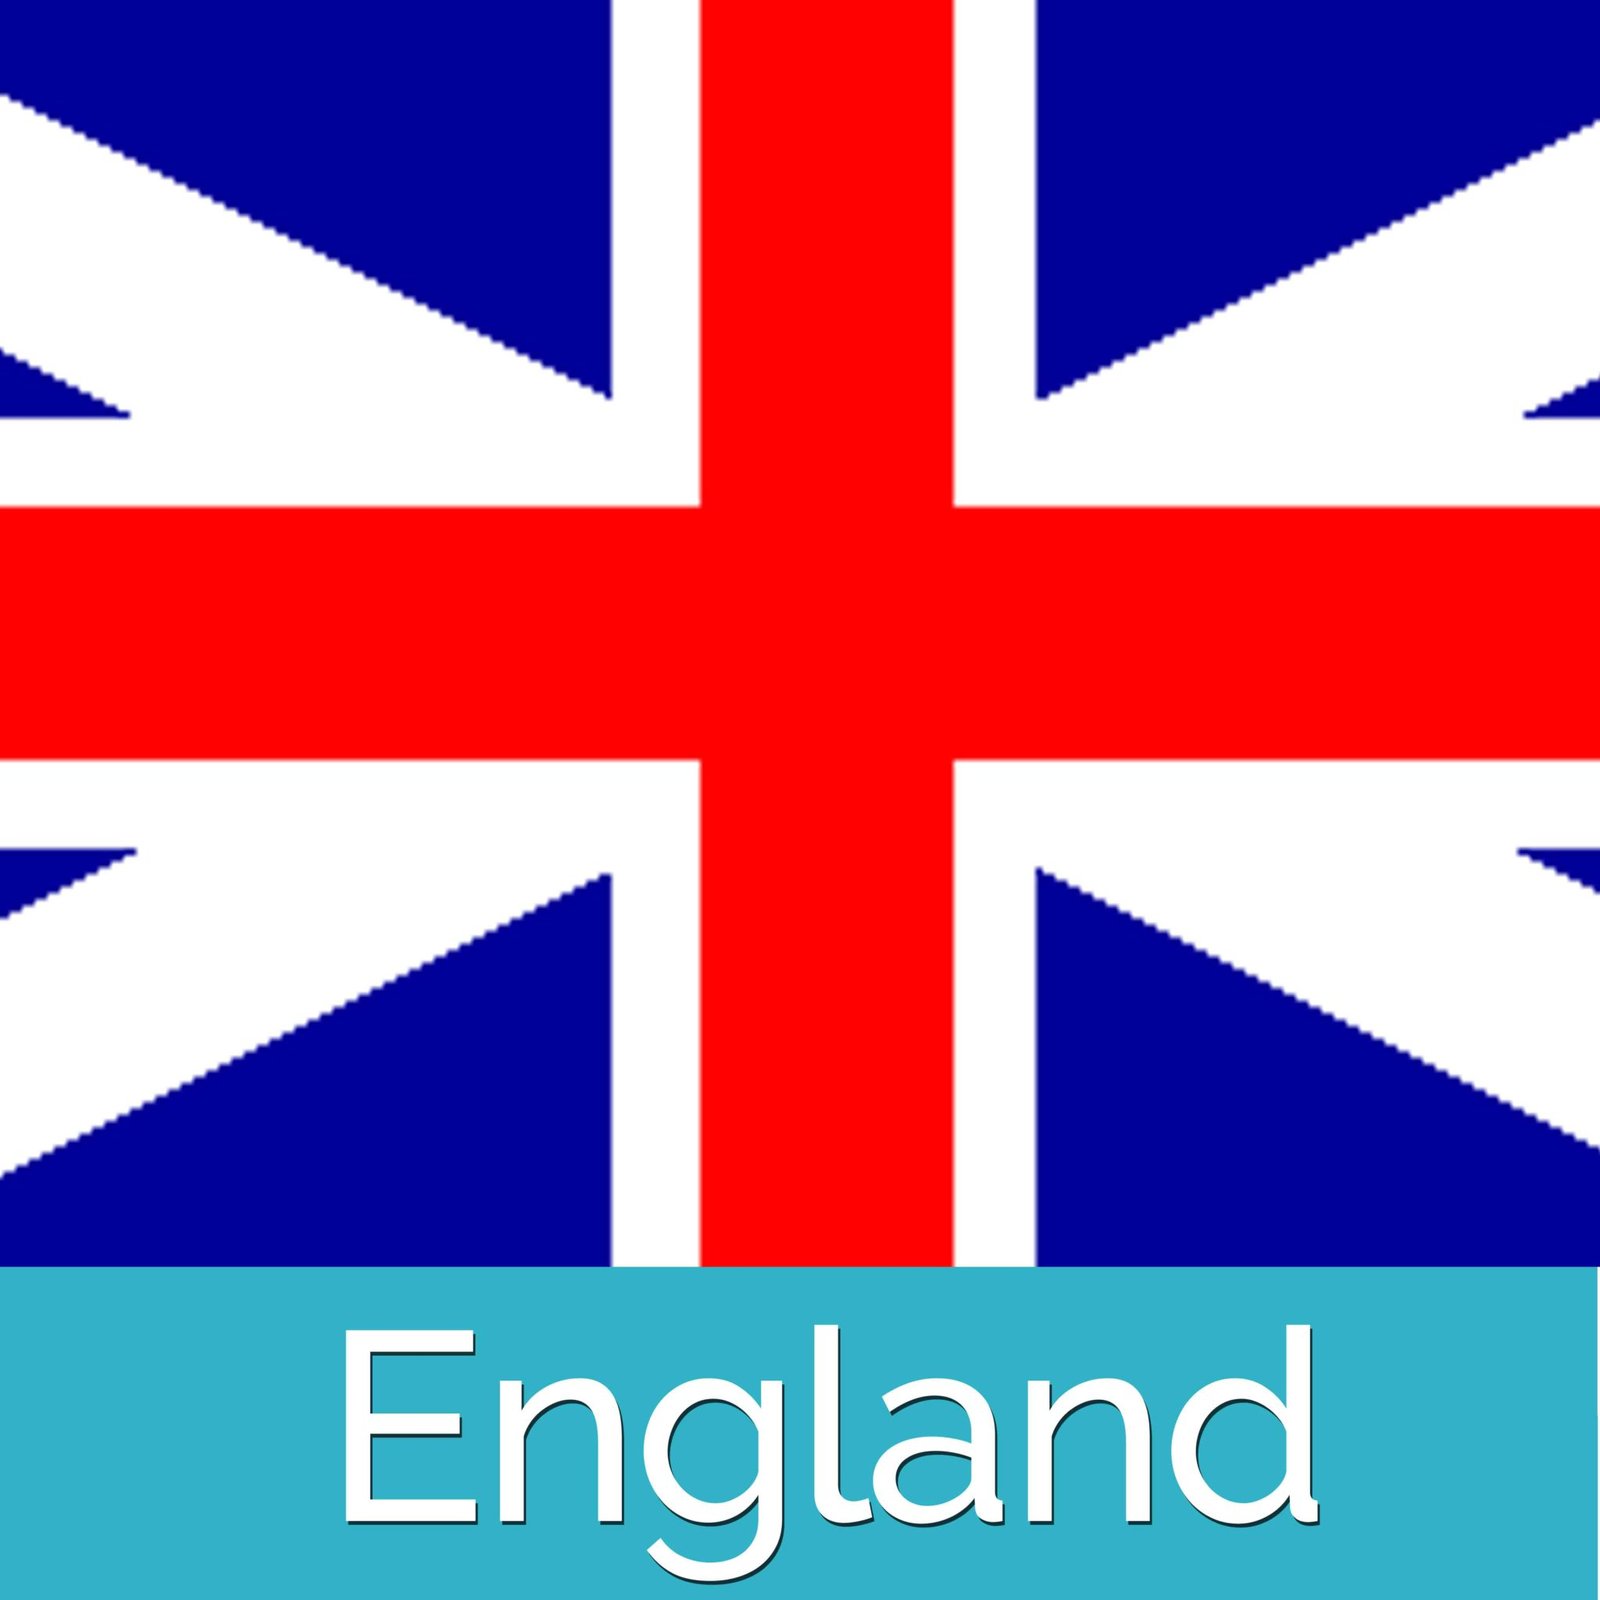 England Travel Guide